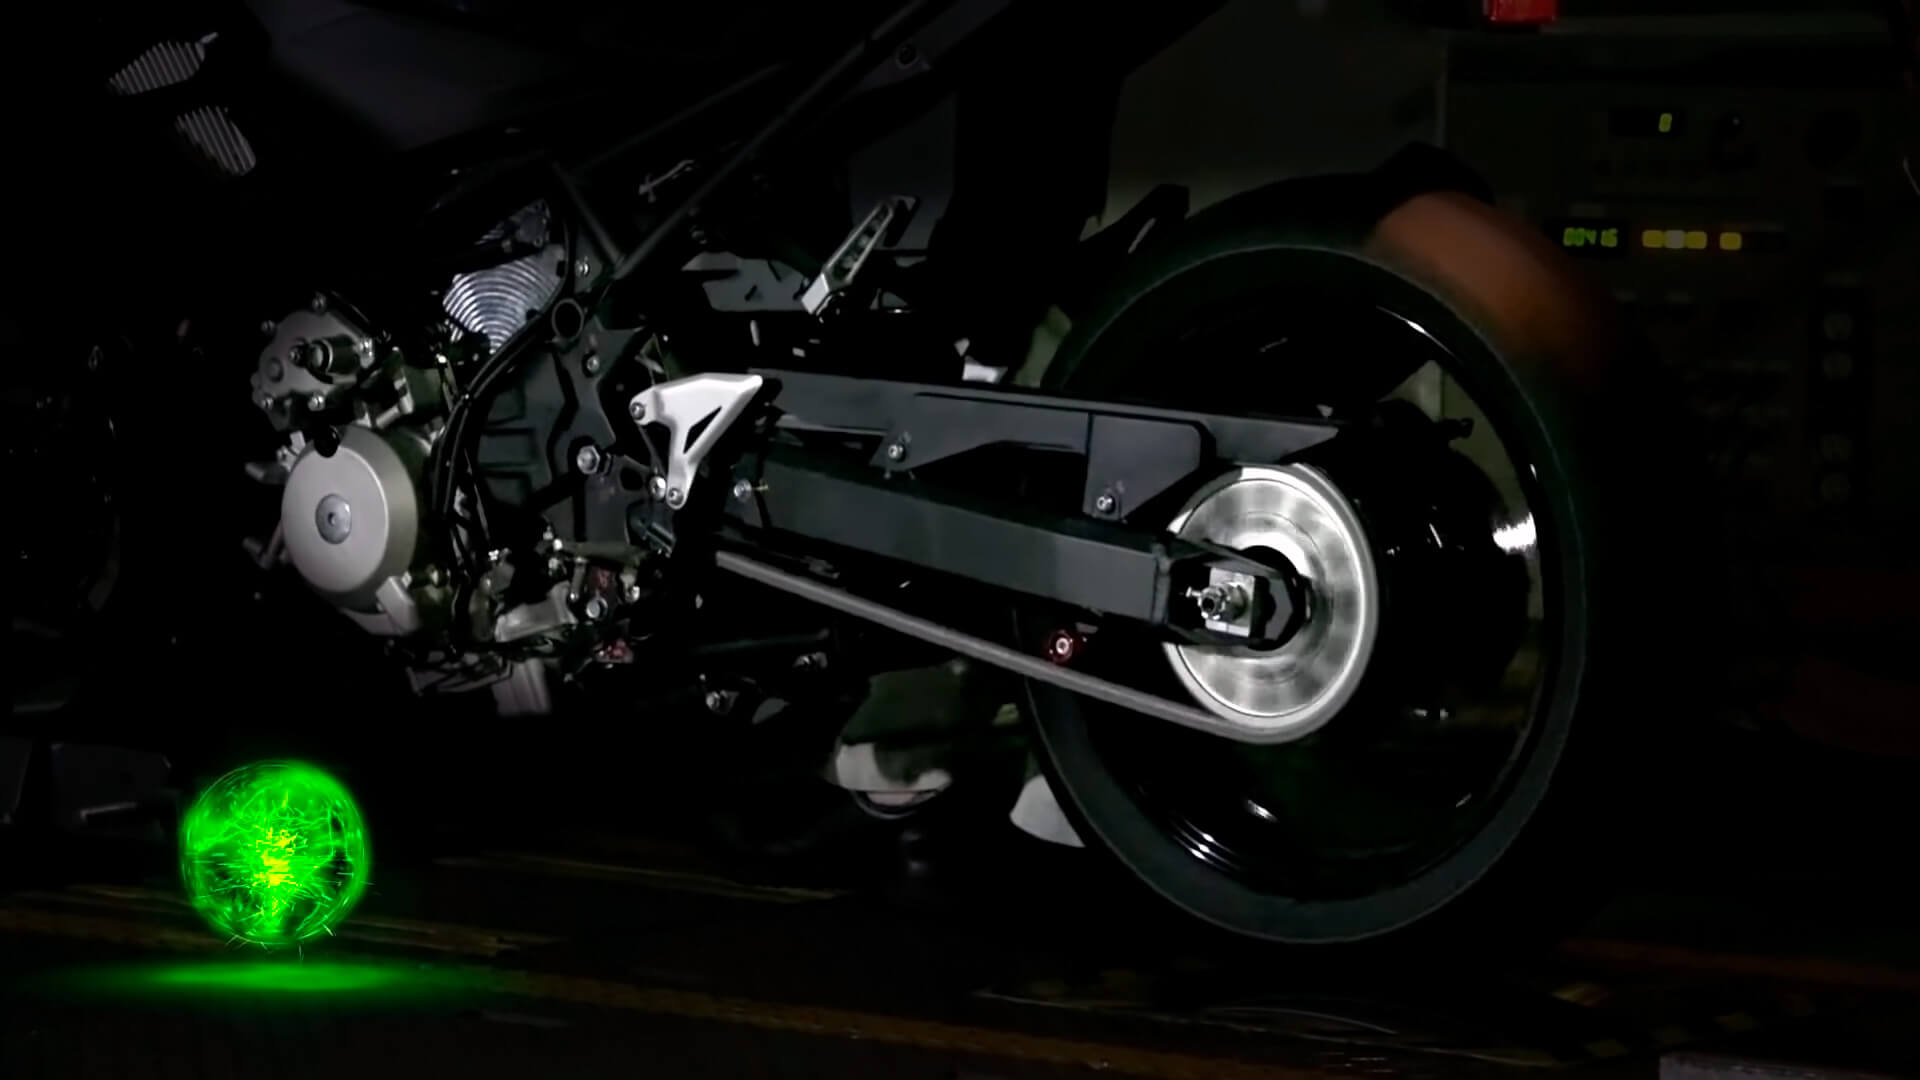 Kawasaki продемонстрировал свое видение гибридного мотоцикла вместе с рабочим прототипом на динамометрическом стенде